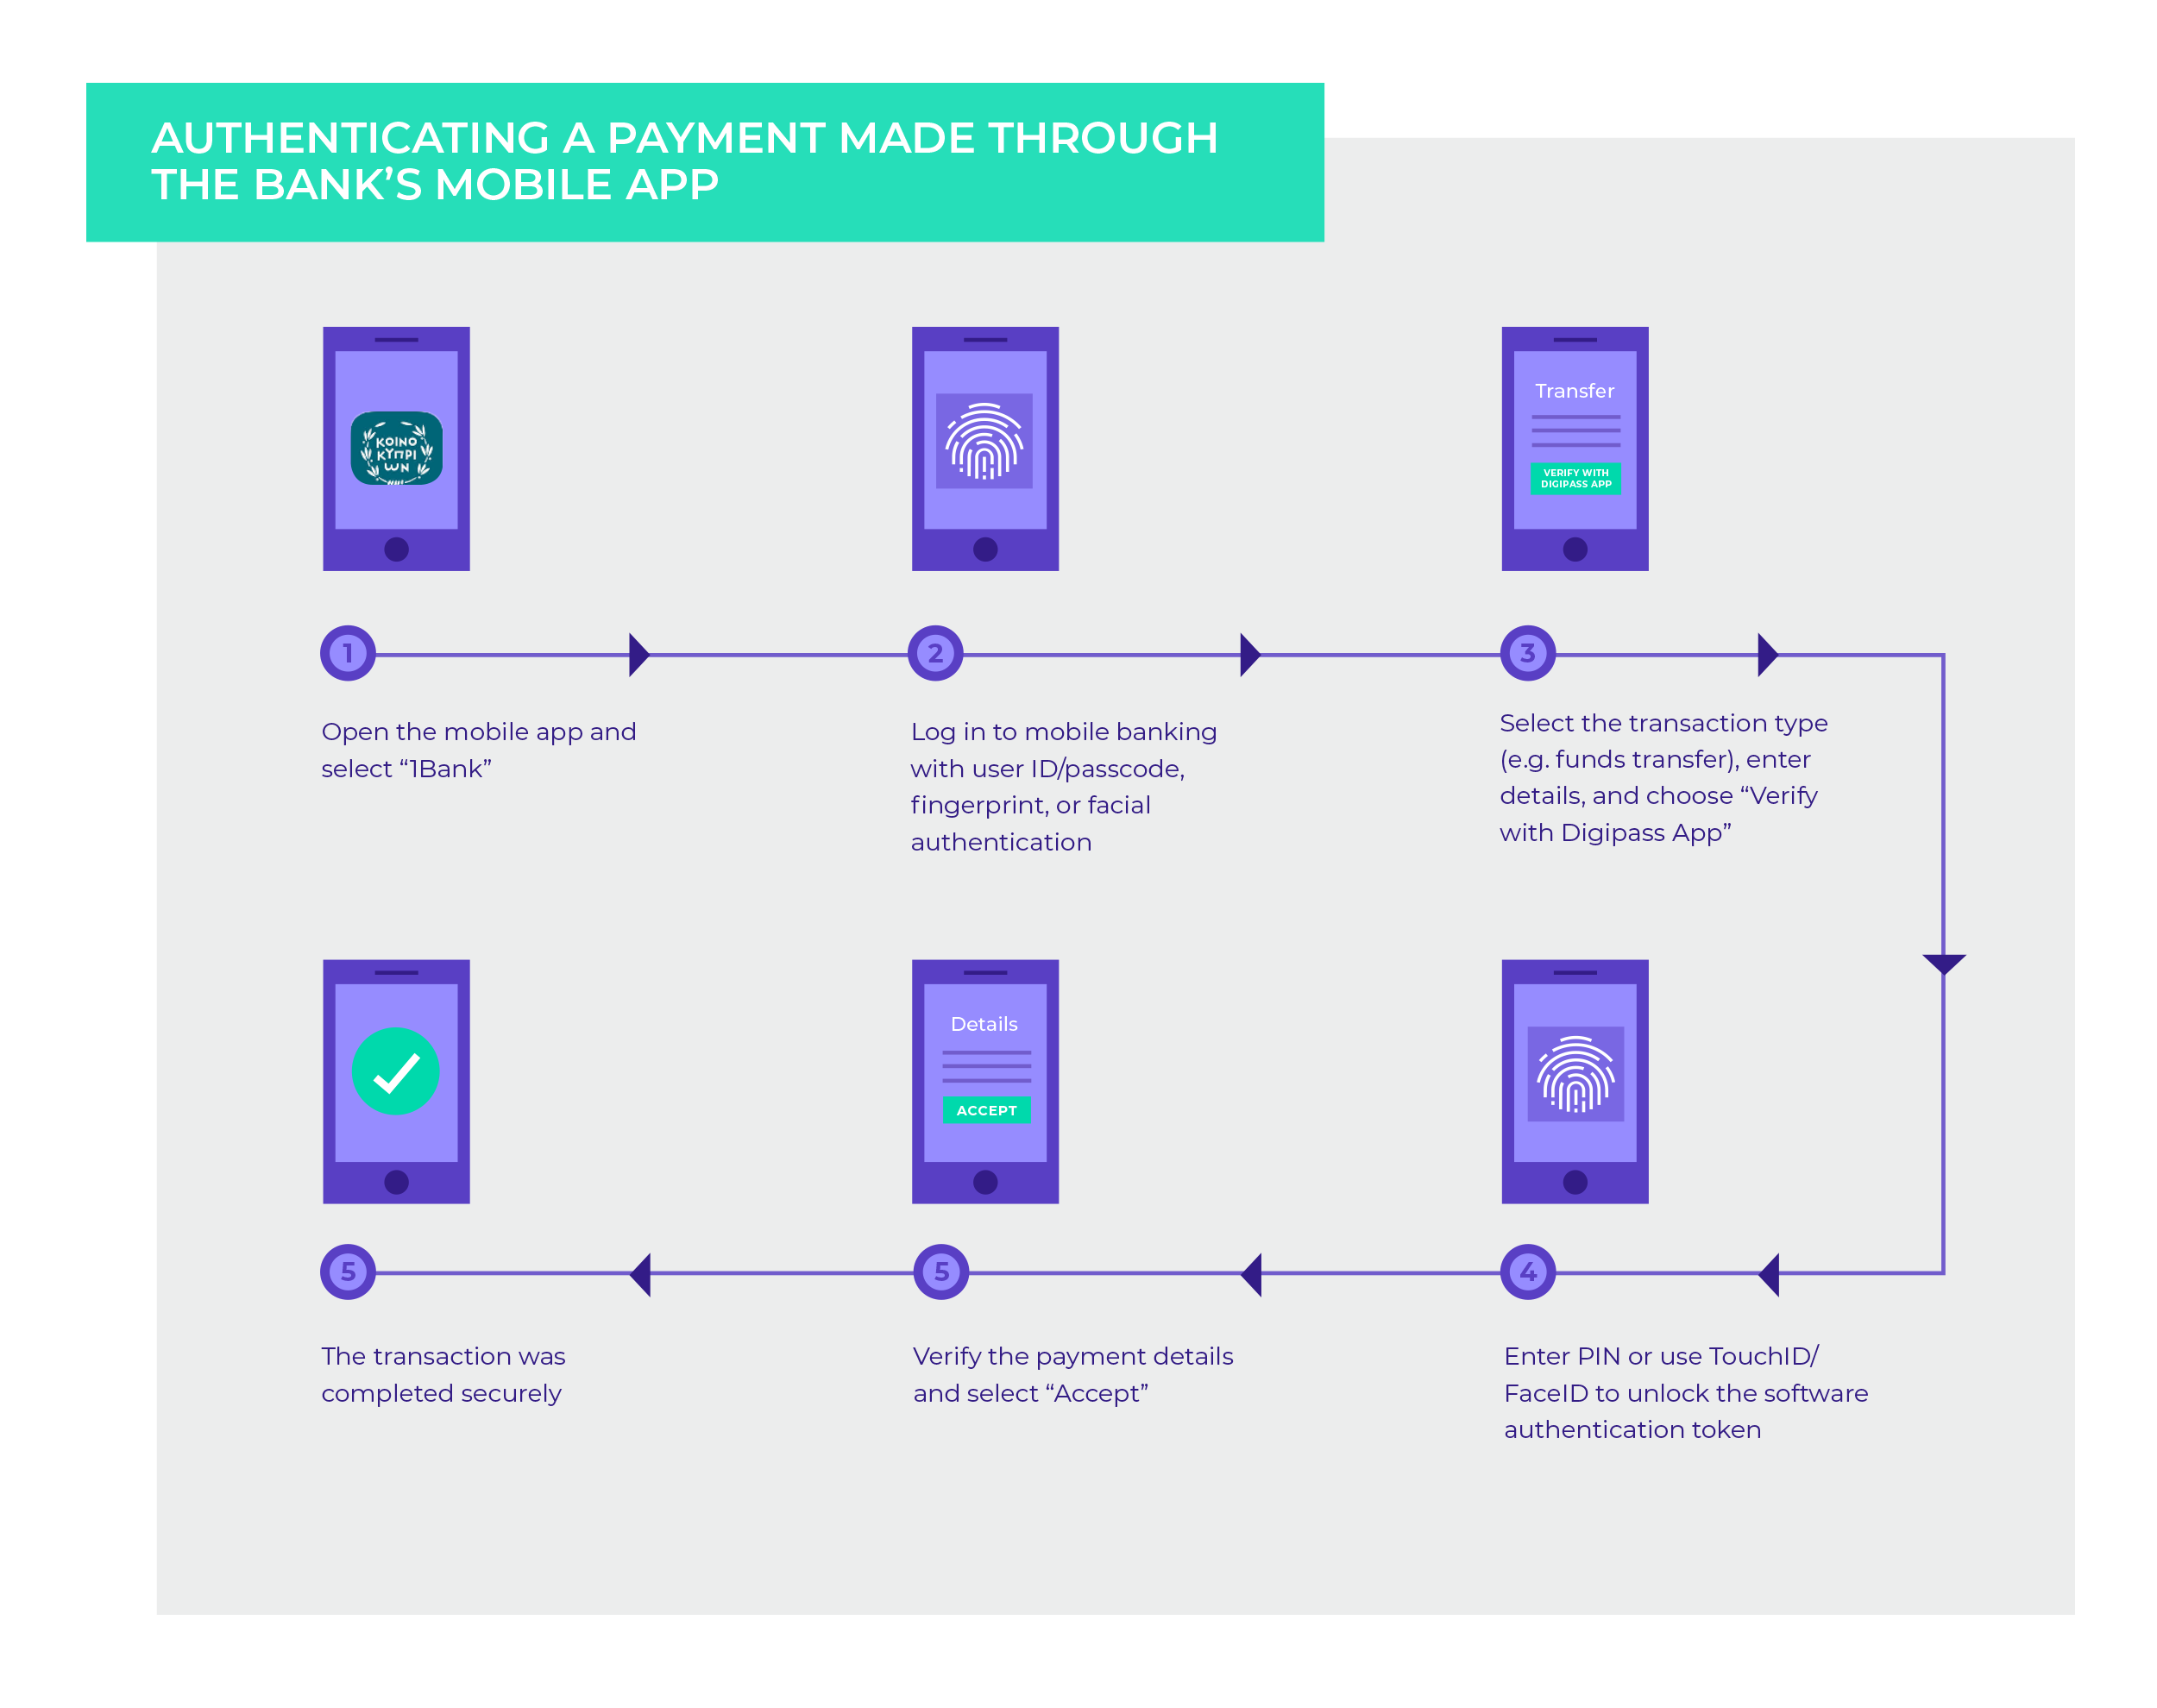 authentification d'un paiement réalisé sur l'application mobile bancaire 